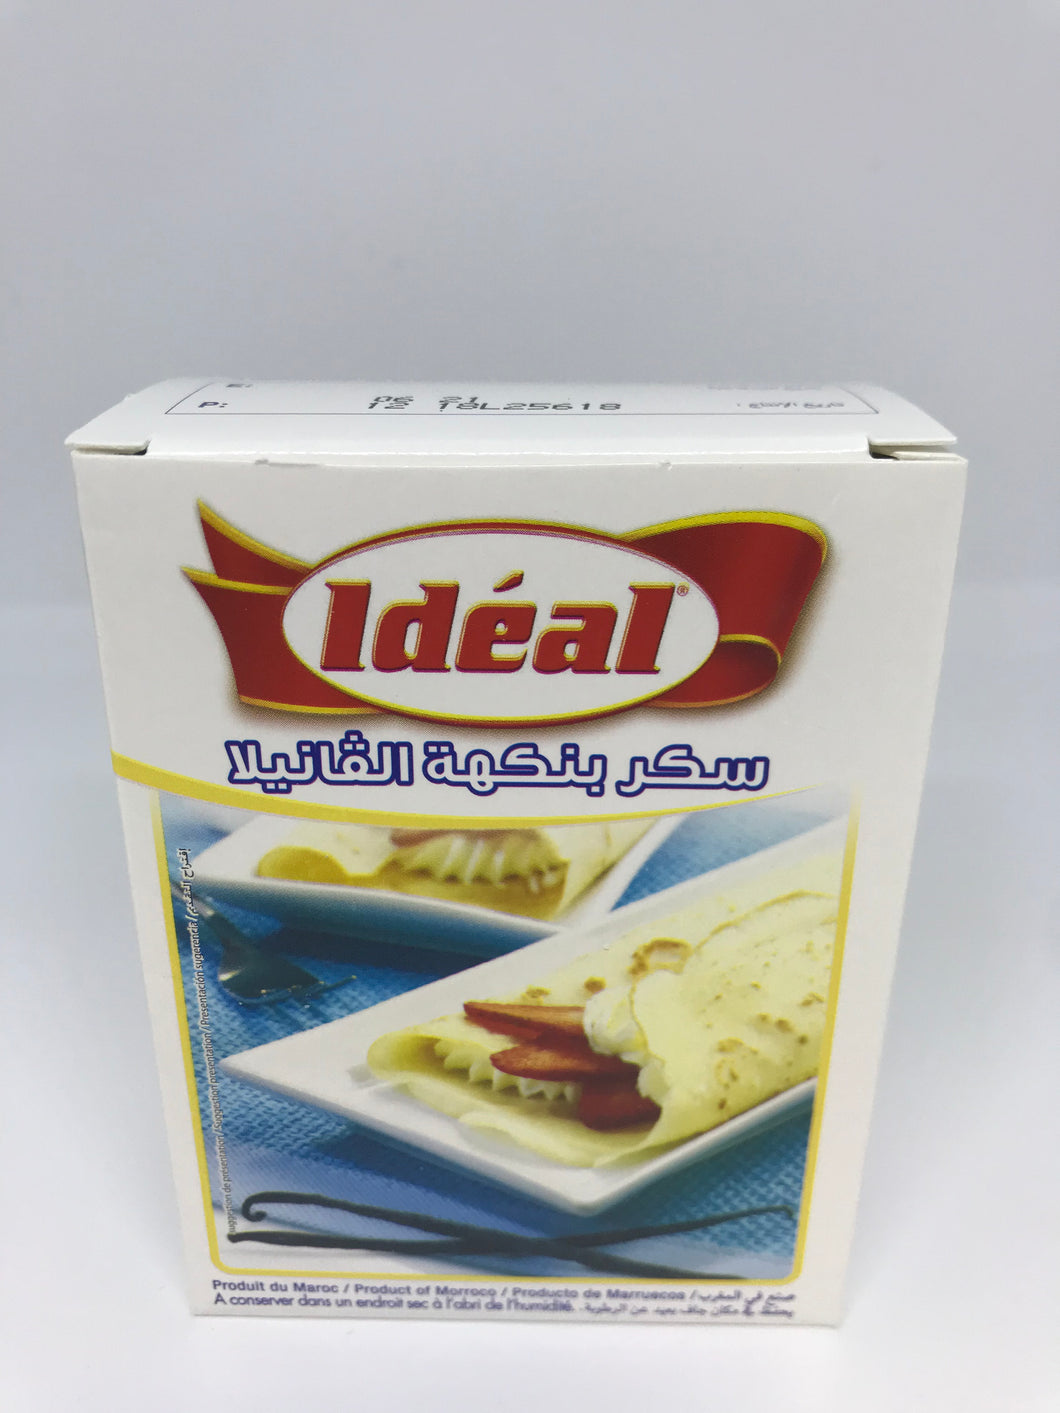 Ideal 10 Packs Sucre Arome Vanille (Vanilla Flavor) 75 Gram (2.64 oz)